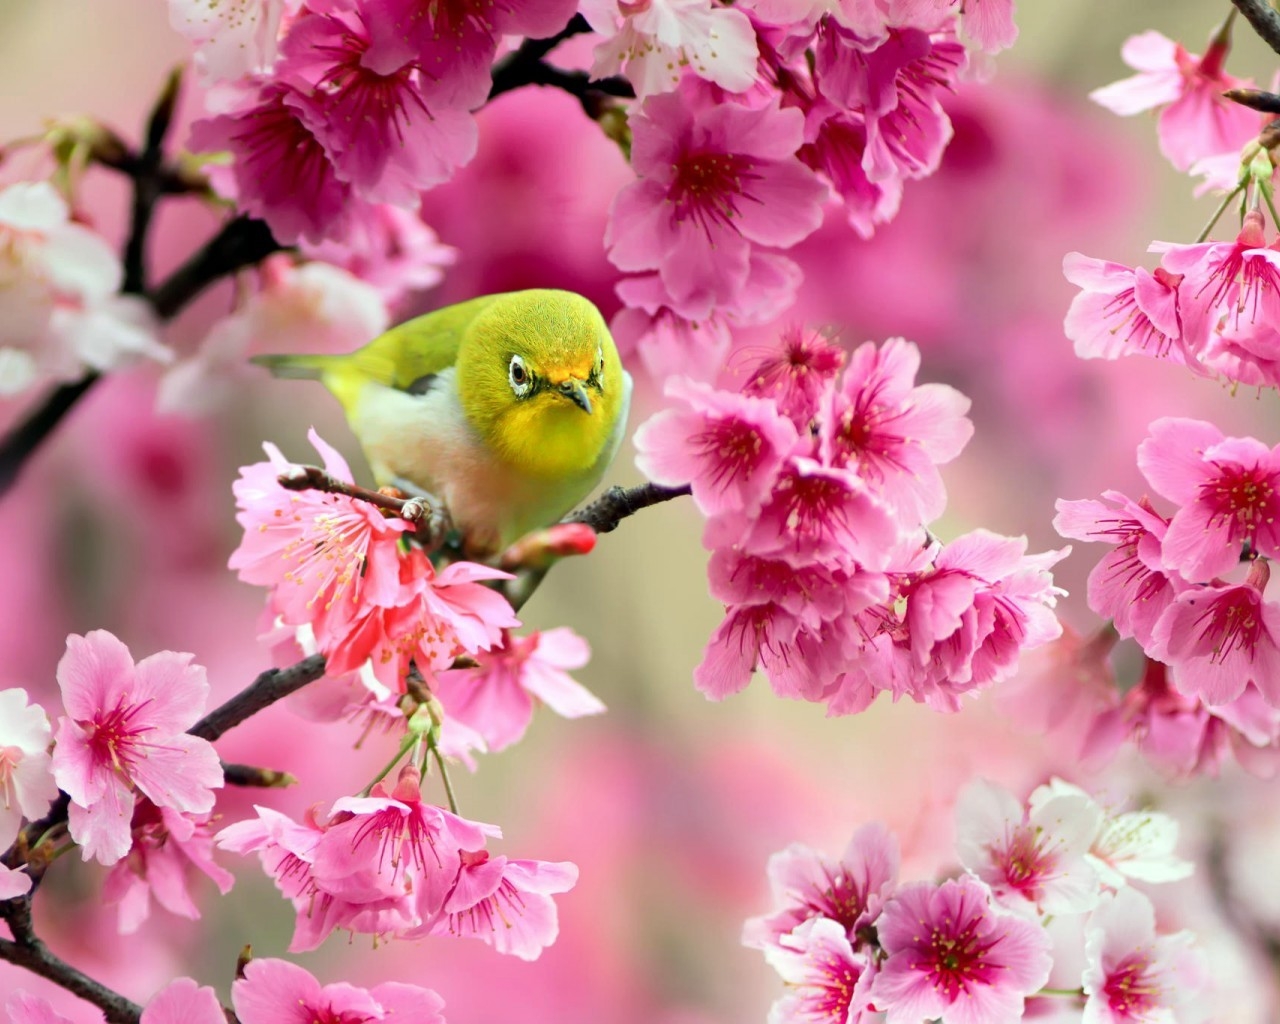 Lovely Japanese White-eye Bird for 1280 x 1024 resolution